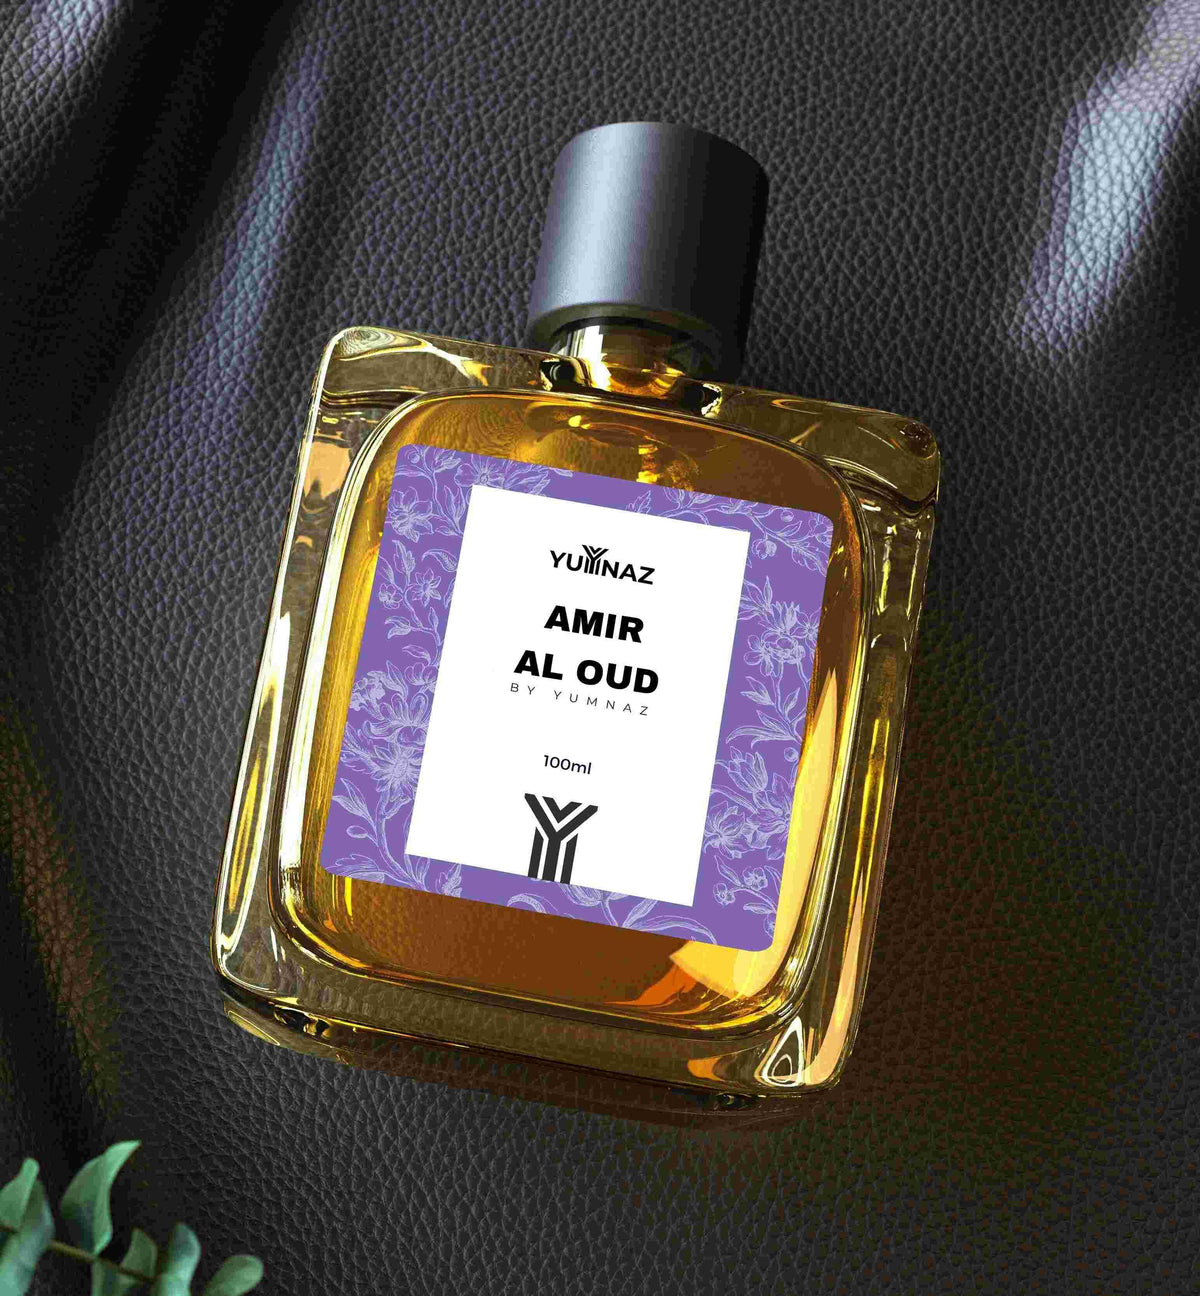 Amir Al Oud Perfume Price in Pakistan